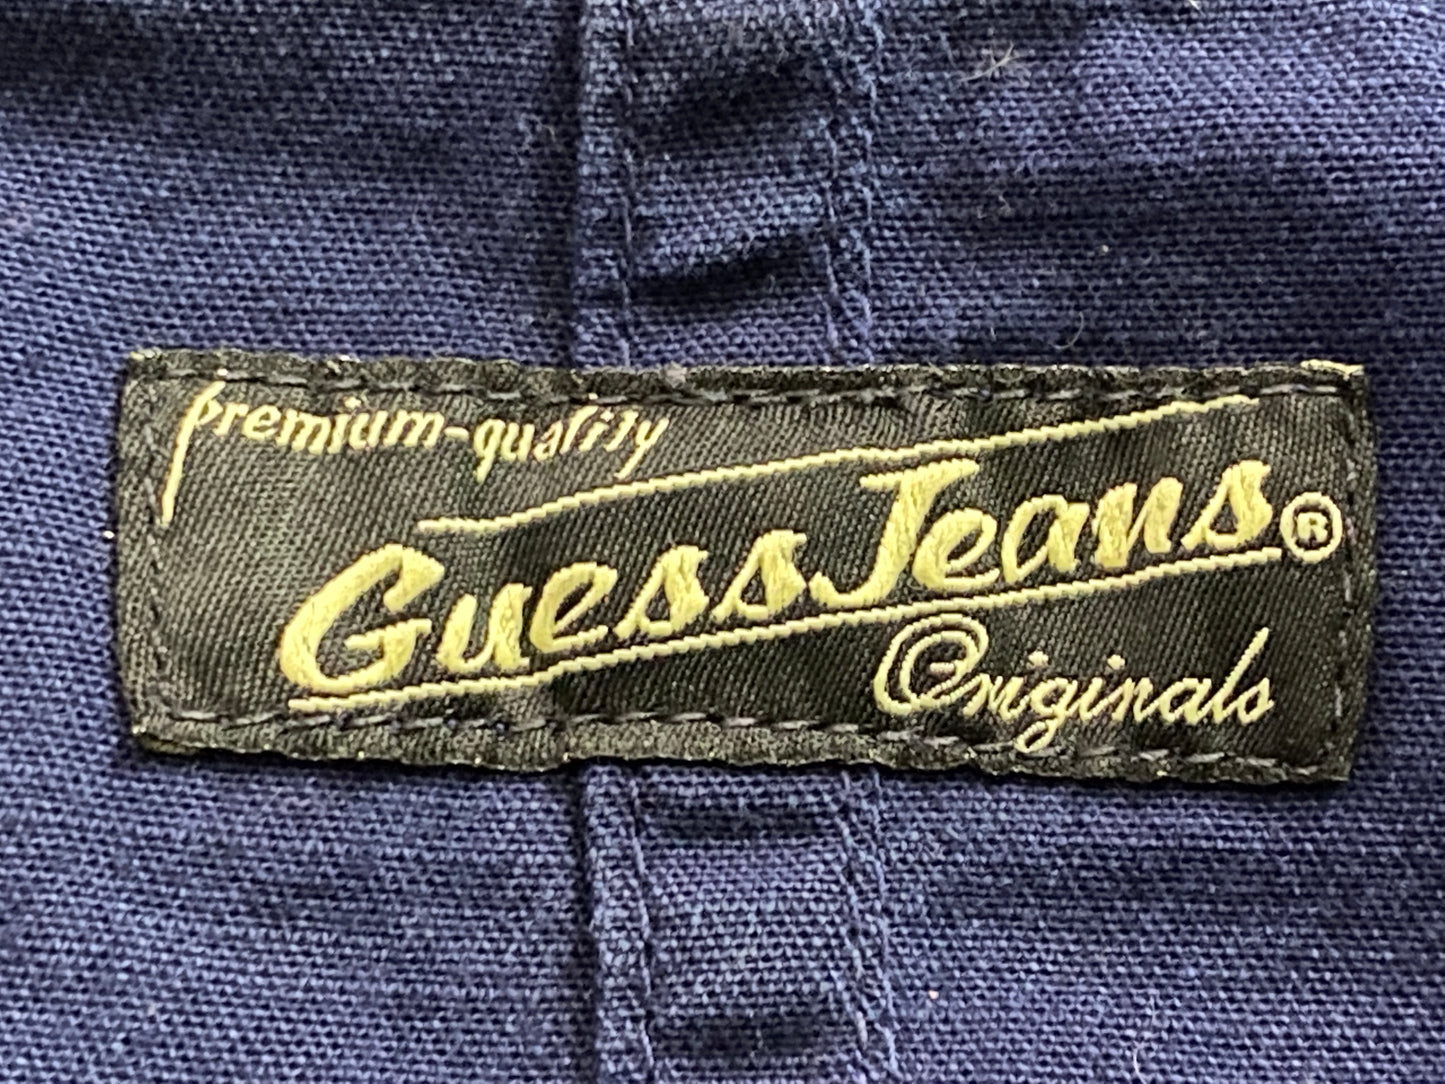 Guess Jeans Vintage Women's Jean Jacket - Medium Blue Cotton